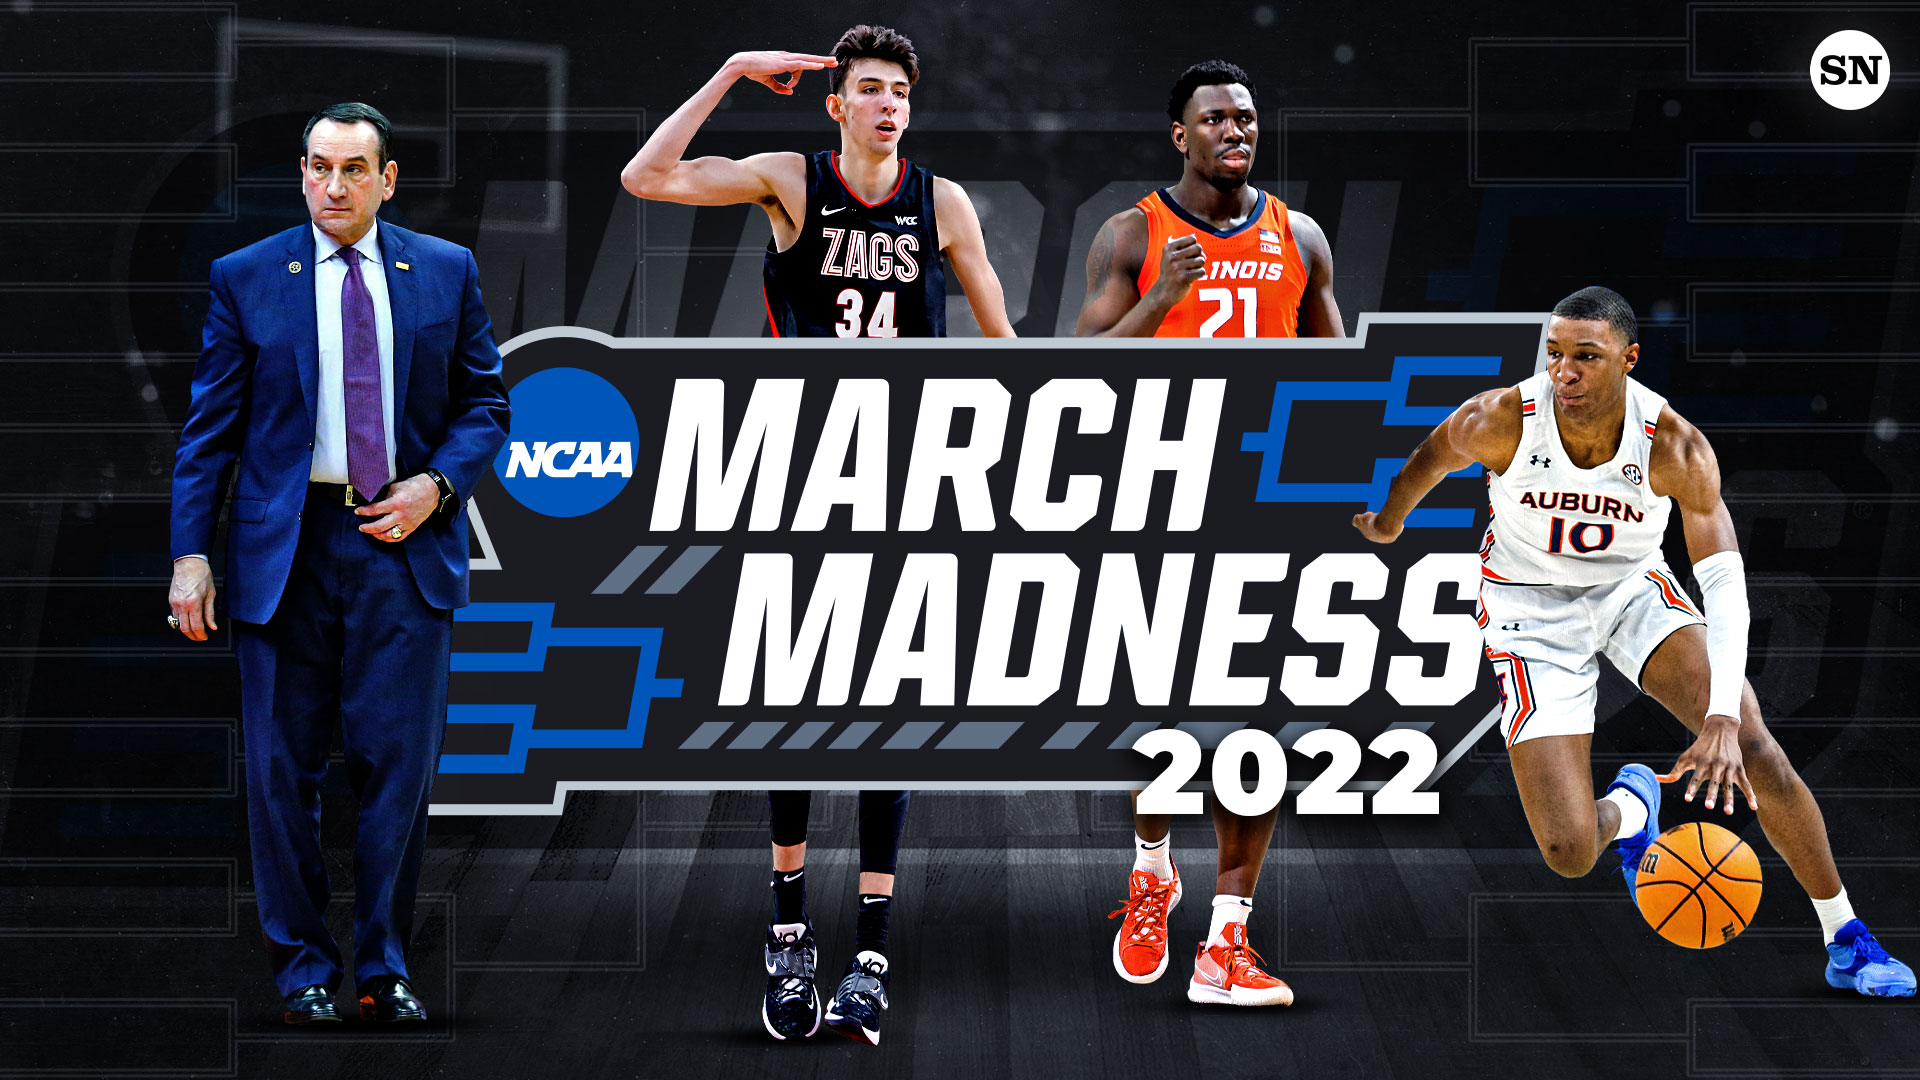 La batalla por el trono de la NCAA March Madness 2022 All American